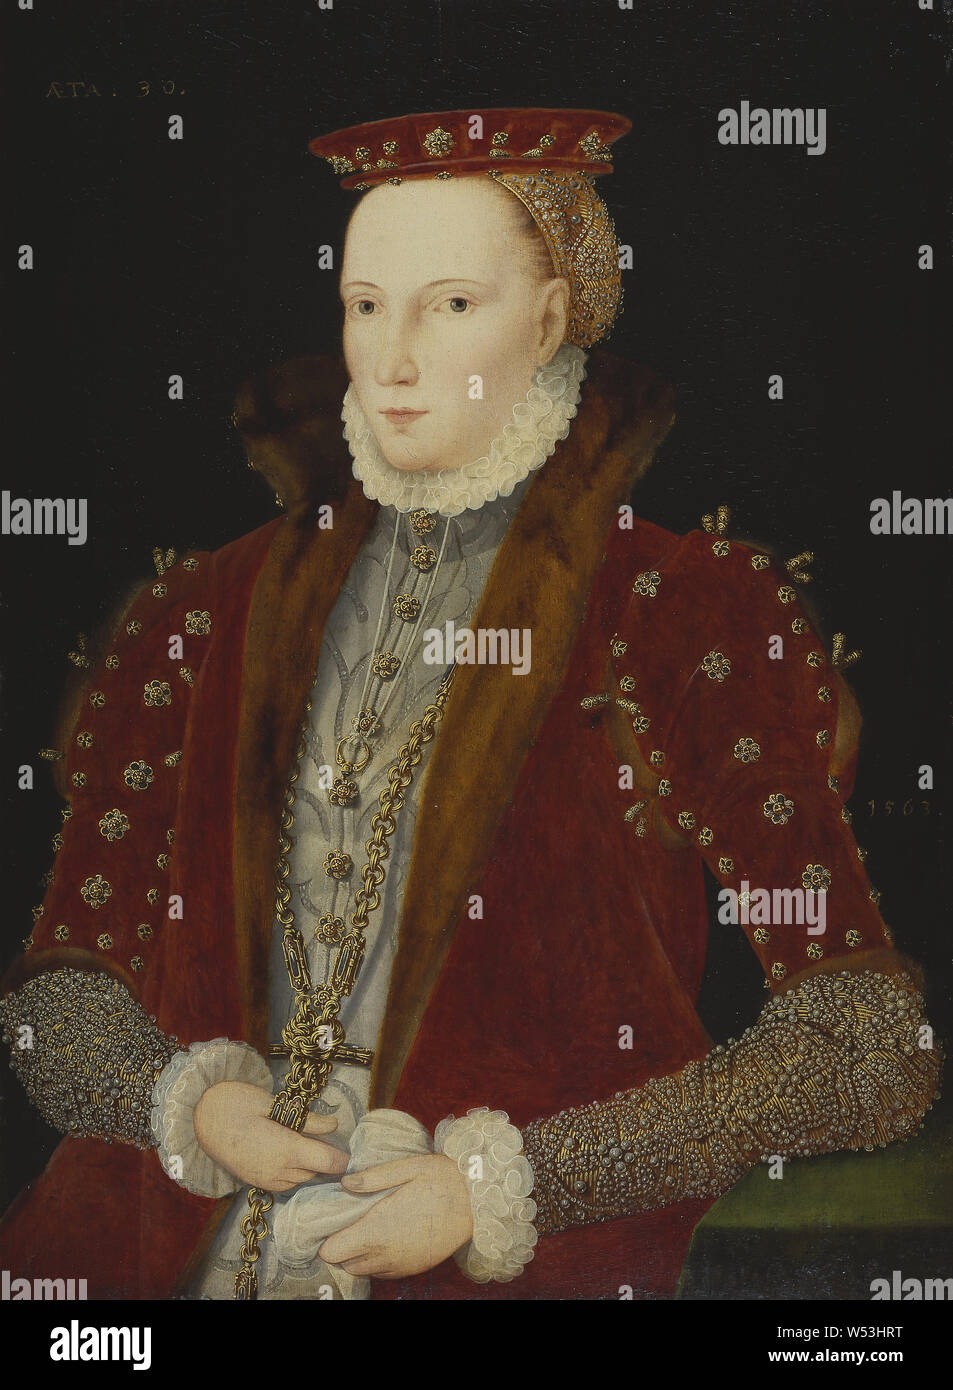 Pintor no identificado, Elizabeth, 1533-1603, la Reina de Inglaterra, mujer desconocida, pintura, retrato, 1563, óleo sobre panel, altura 79 cm (31,1 pulgadas), ancho de 58 cm (22,8 pulgadas) Foto de stock